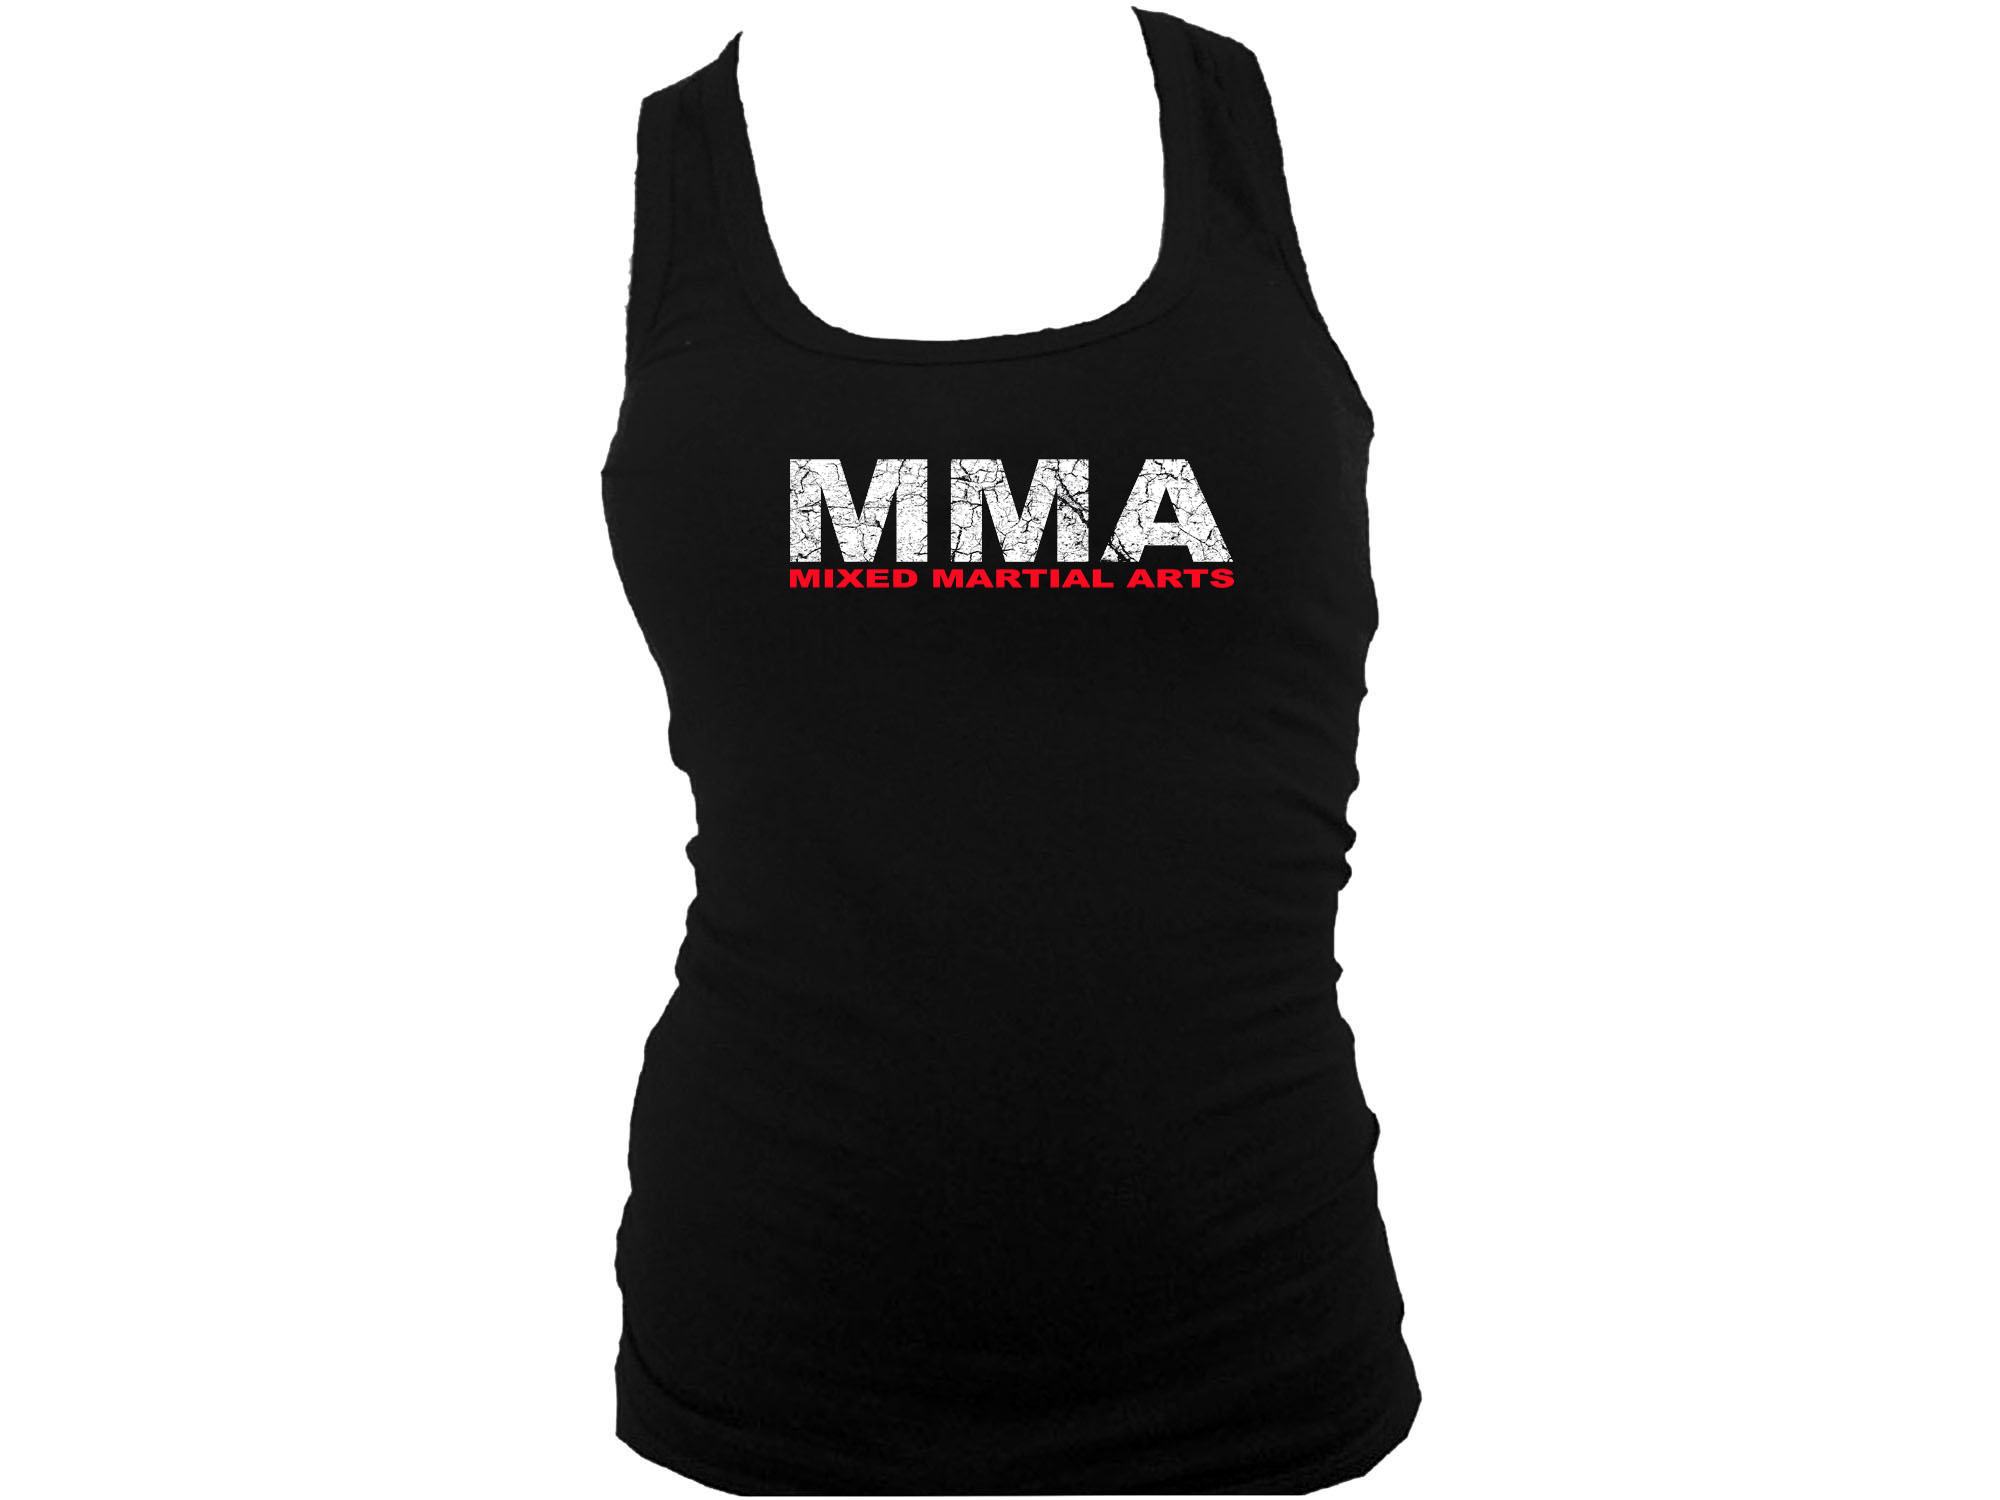 MMA mixed martial arts black women tank top L/XL